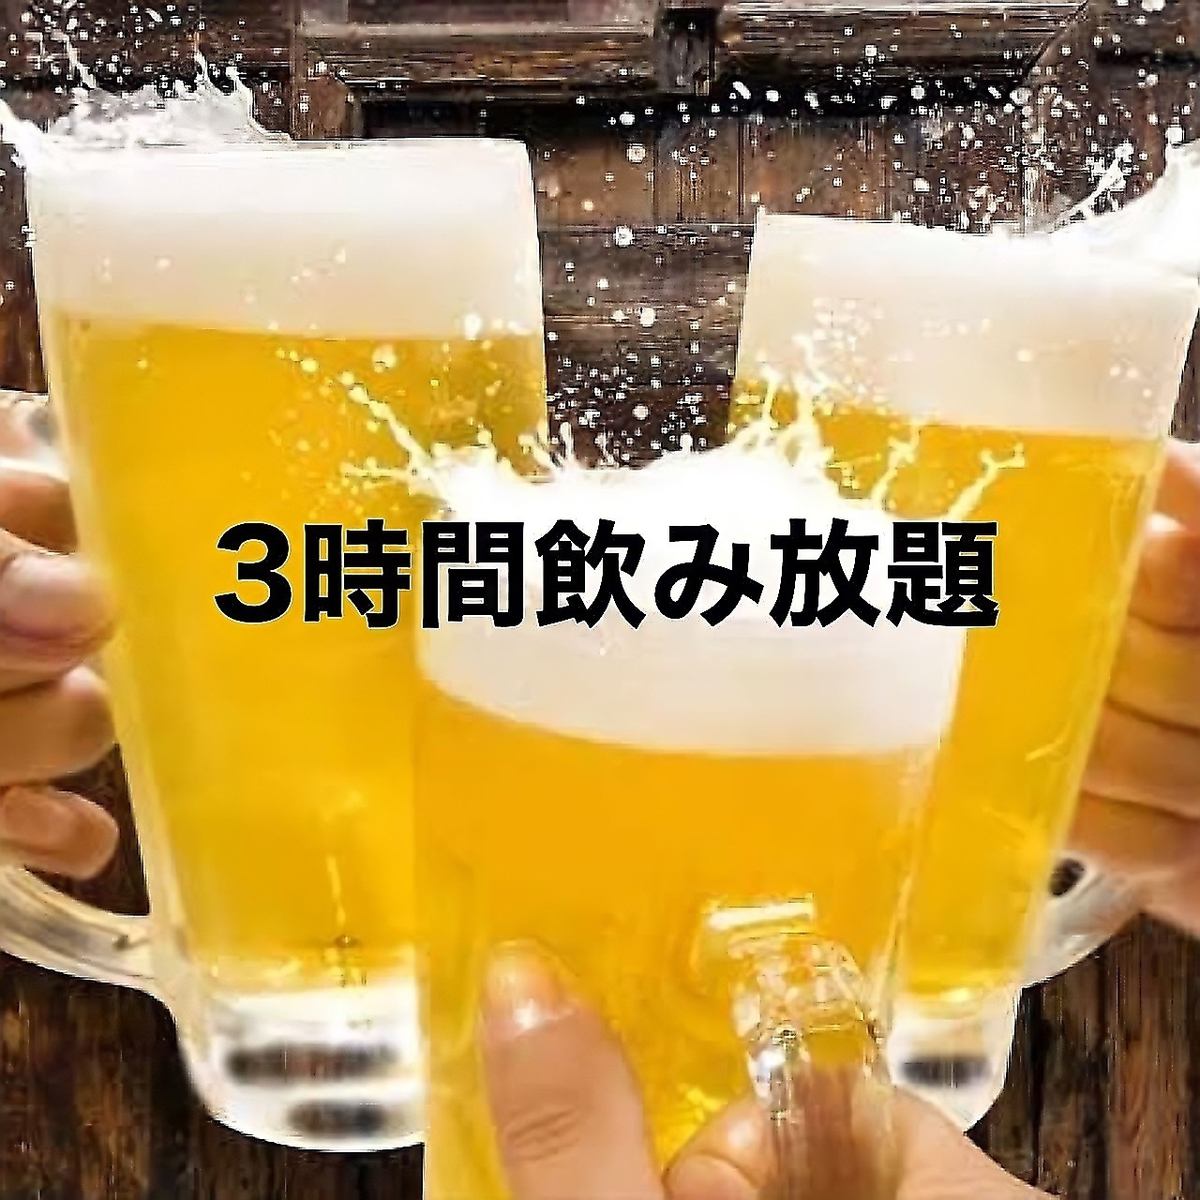 生啤酒也OK★超值单品无限畅饮★2小时777日元/3小时999日元！！